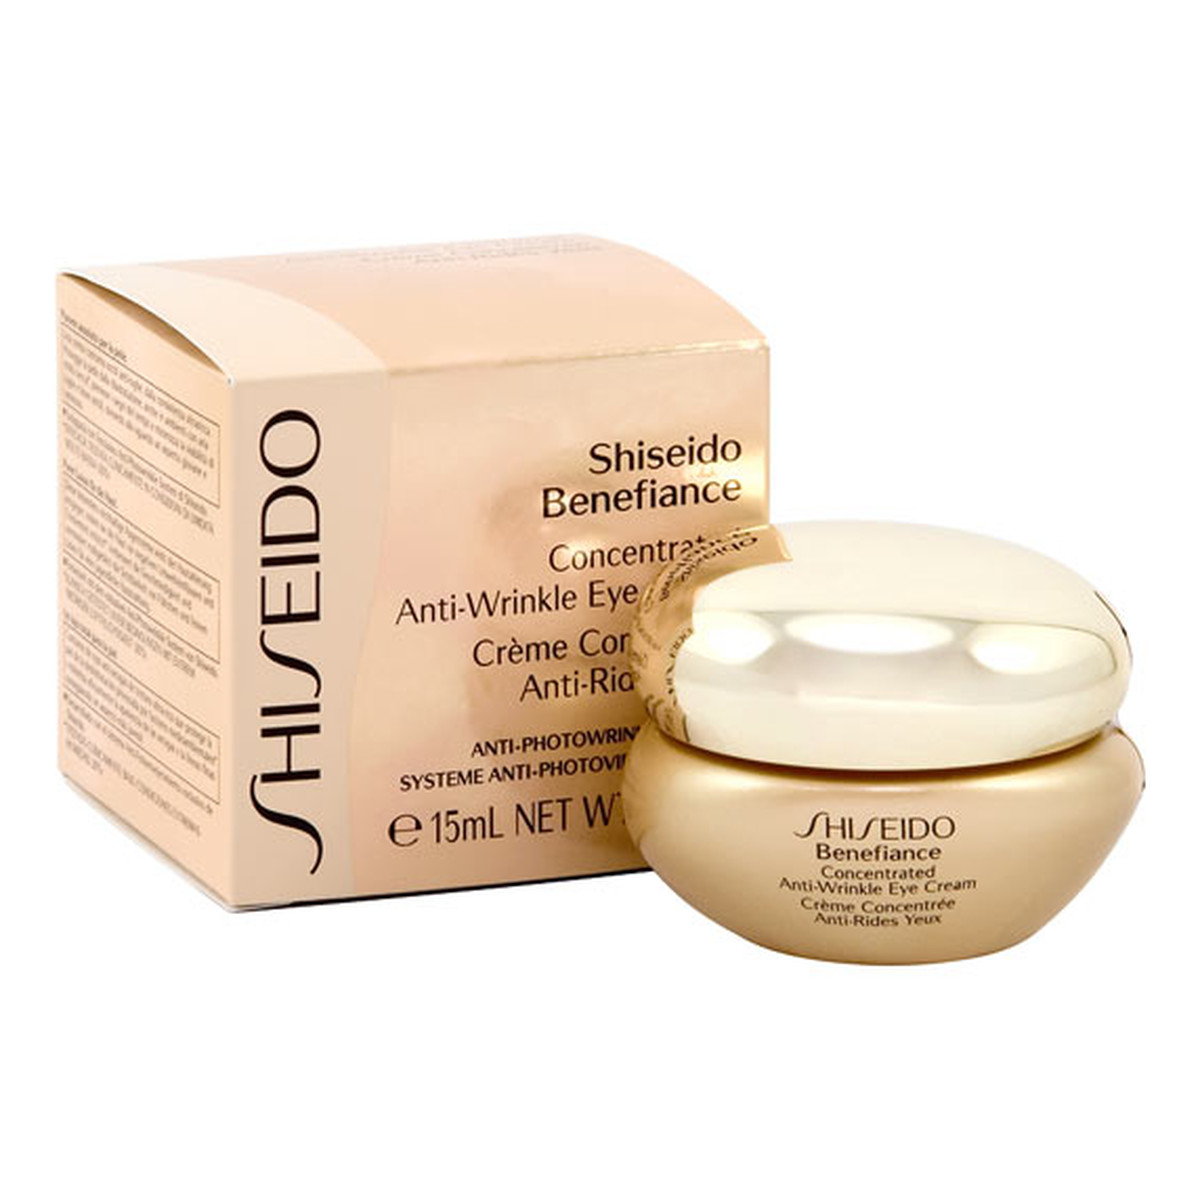 Shiseido Benefiance Skoncentrowany krem przeciwzmarszczkowy pod oczy 15ml